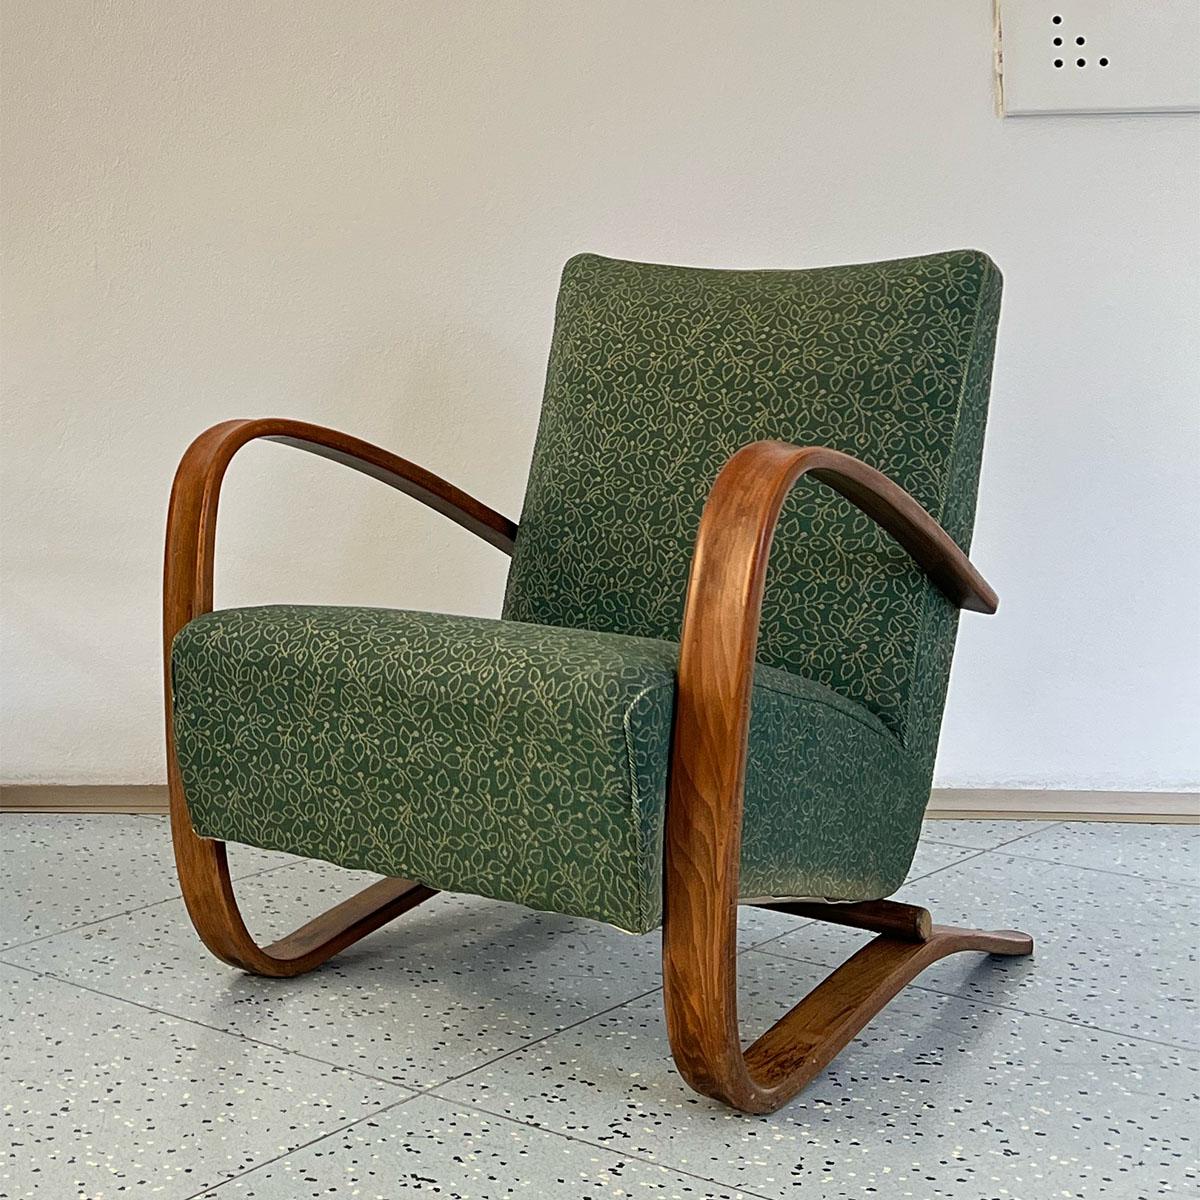 Élégante chaise longue en bois et tissu, modèle H-269, conçue par Jindřich Halabala et fabriquée par UP Závody en ex-Tchécoslovaquie, années 1930.

Peut-être l'un des modèles de chaises longues les plus connus du célèbre designer tchèque, le modèle